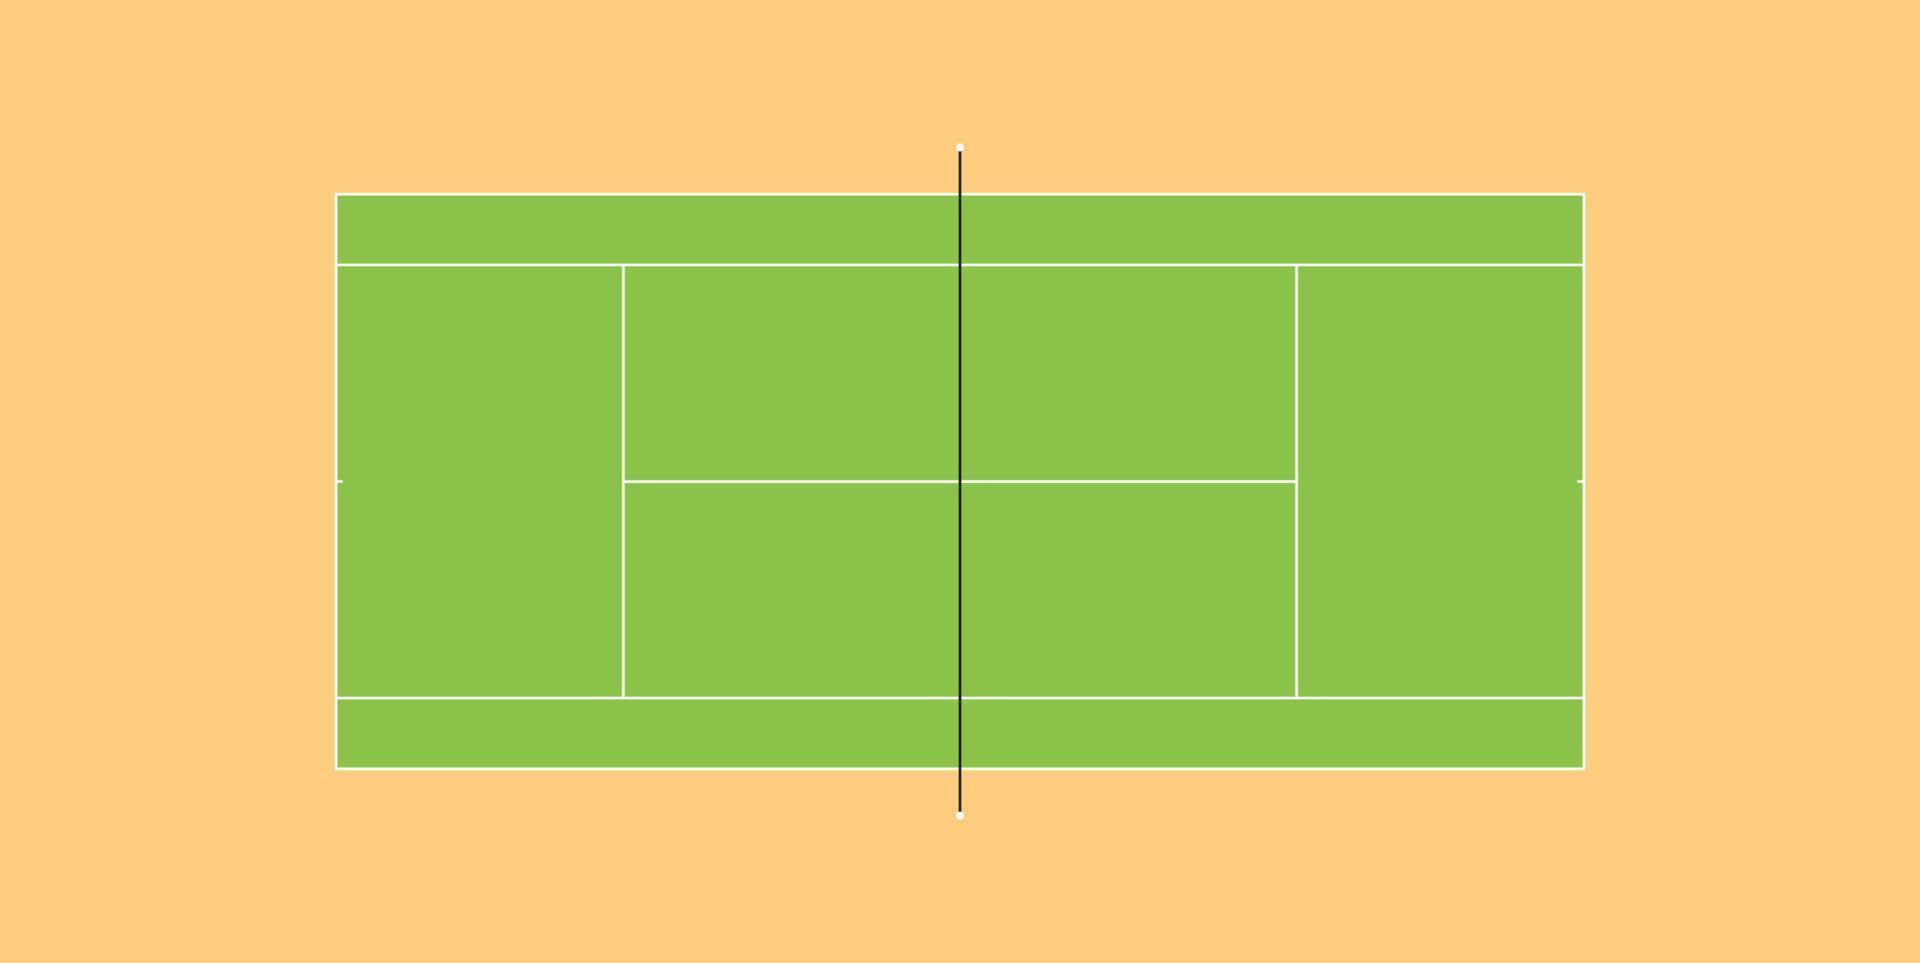 leeg regeling van tennis rechtbank met naleving van standaard- proporties, met markeringen, vector geïsoleerd.